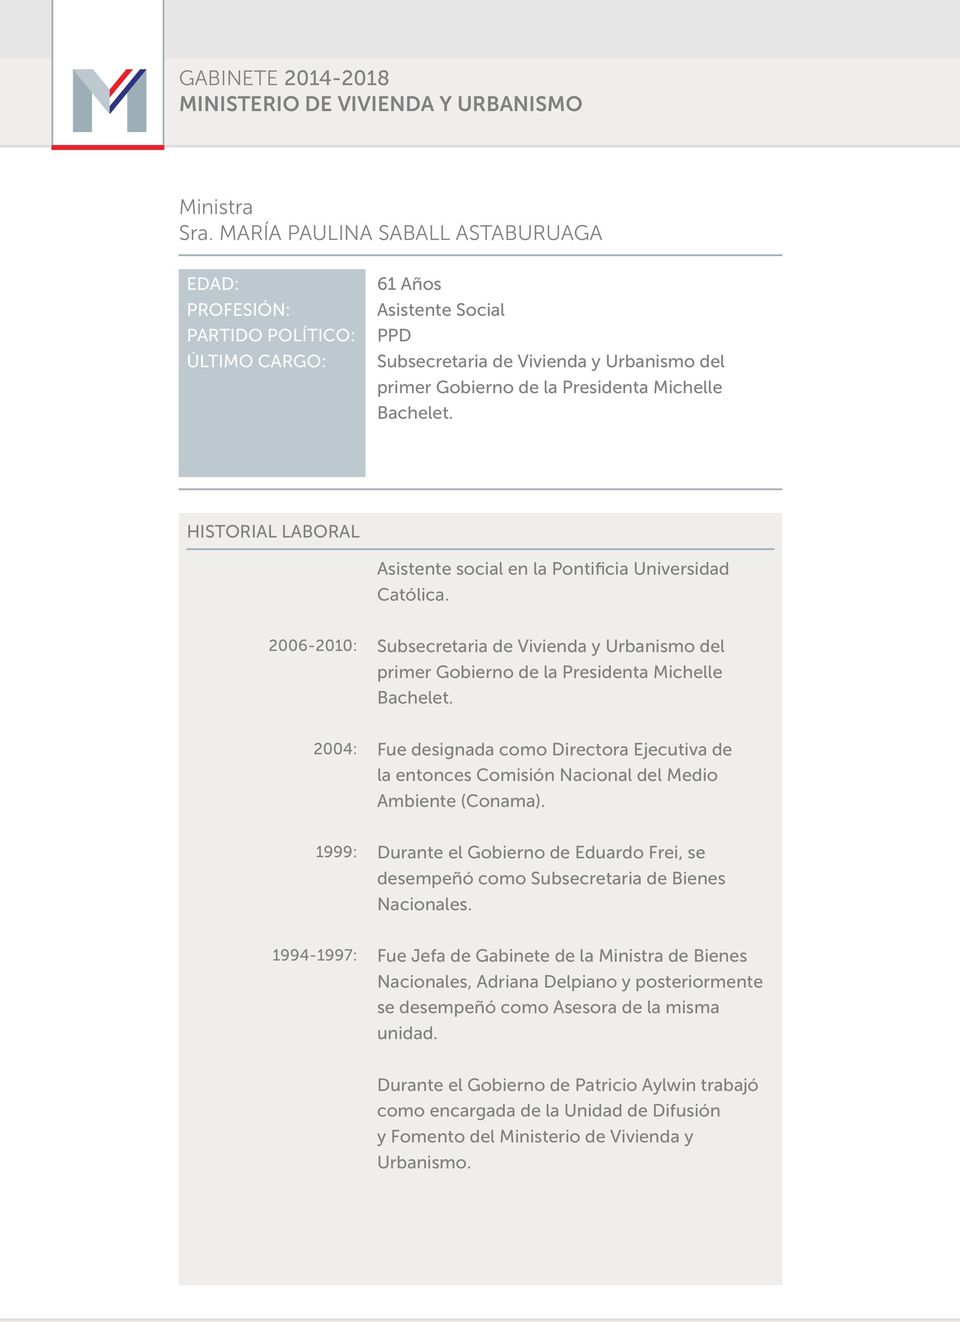 Asistente social en la Pontificia Universidad Católica. 2006-2010: Subsecretaria de Vivienda y Urbanismo del primer Gobierno de la Presidenta Michelle Bachelet.